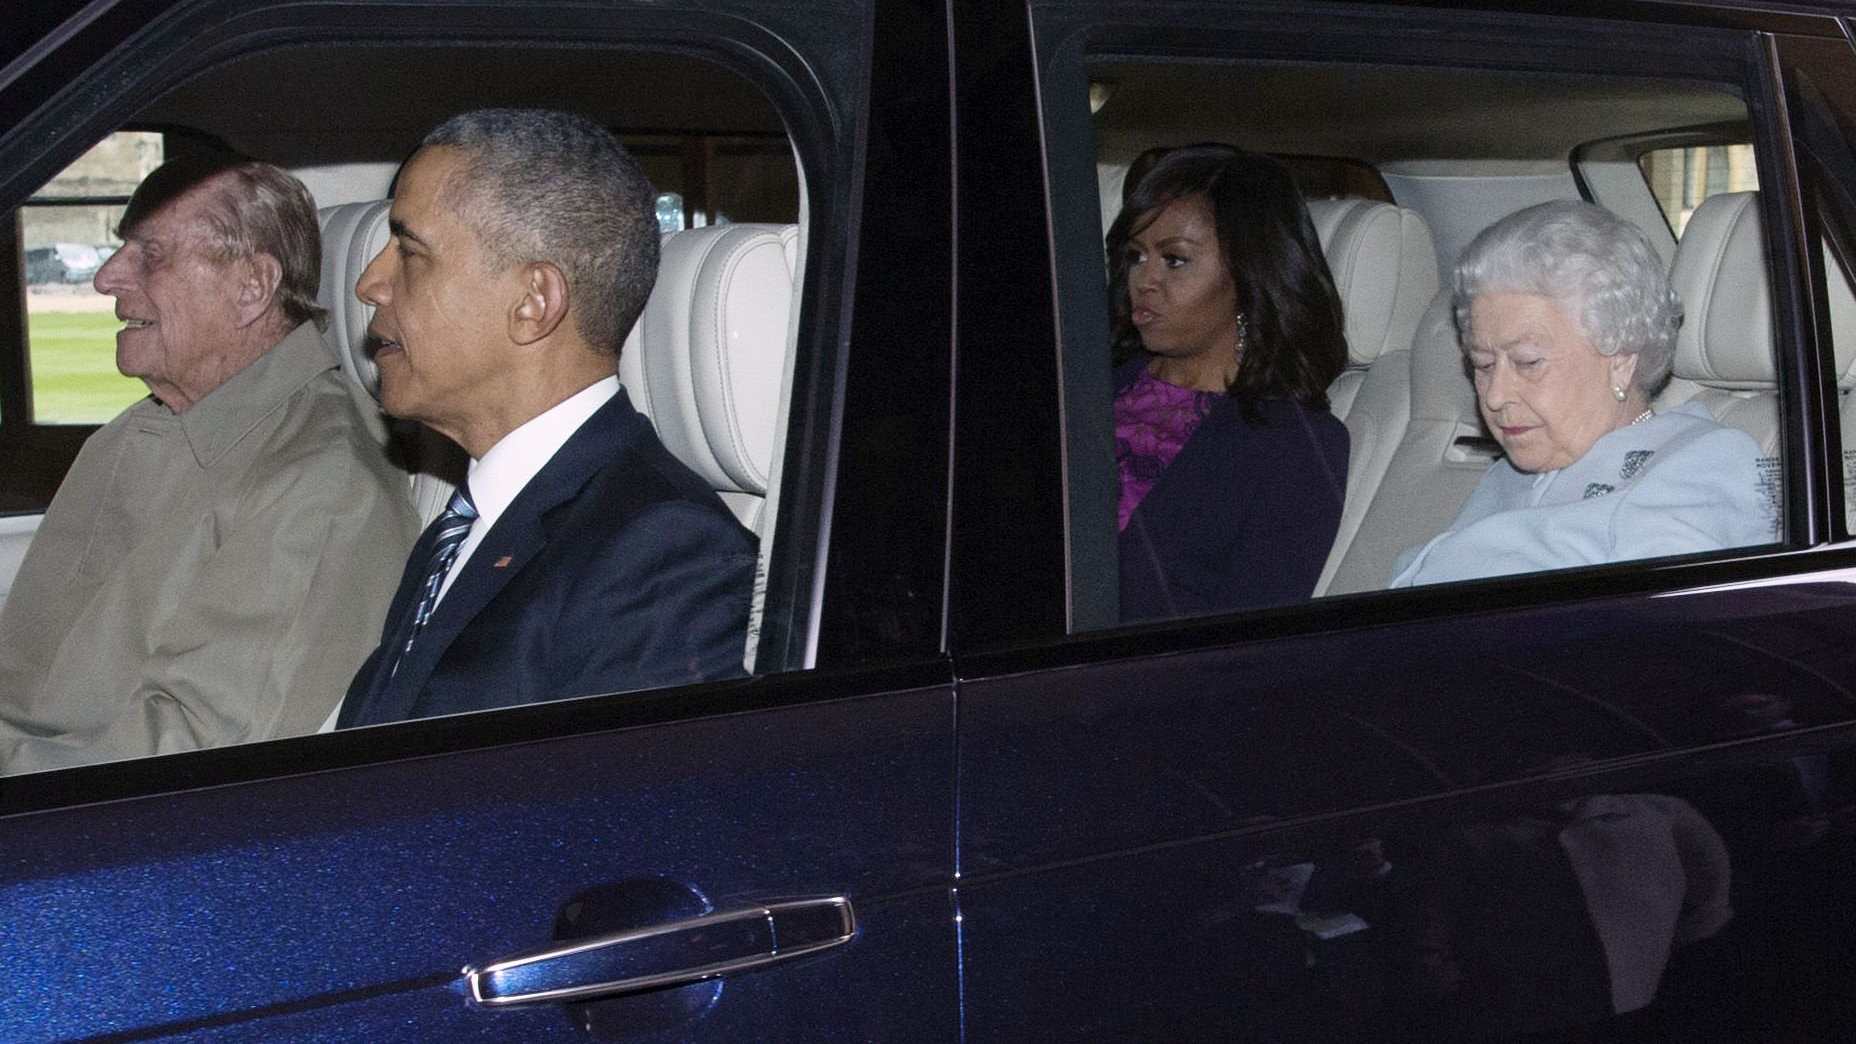 barack-michelle-obama-queen-carpool